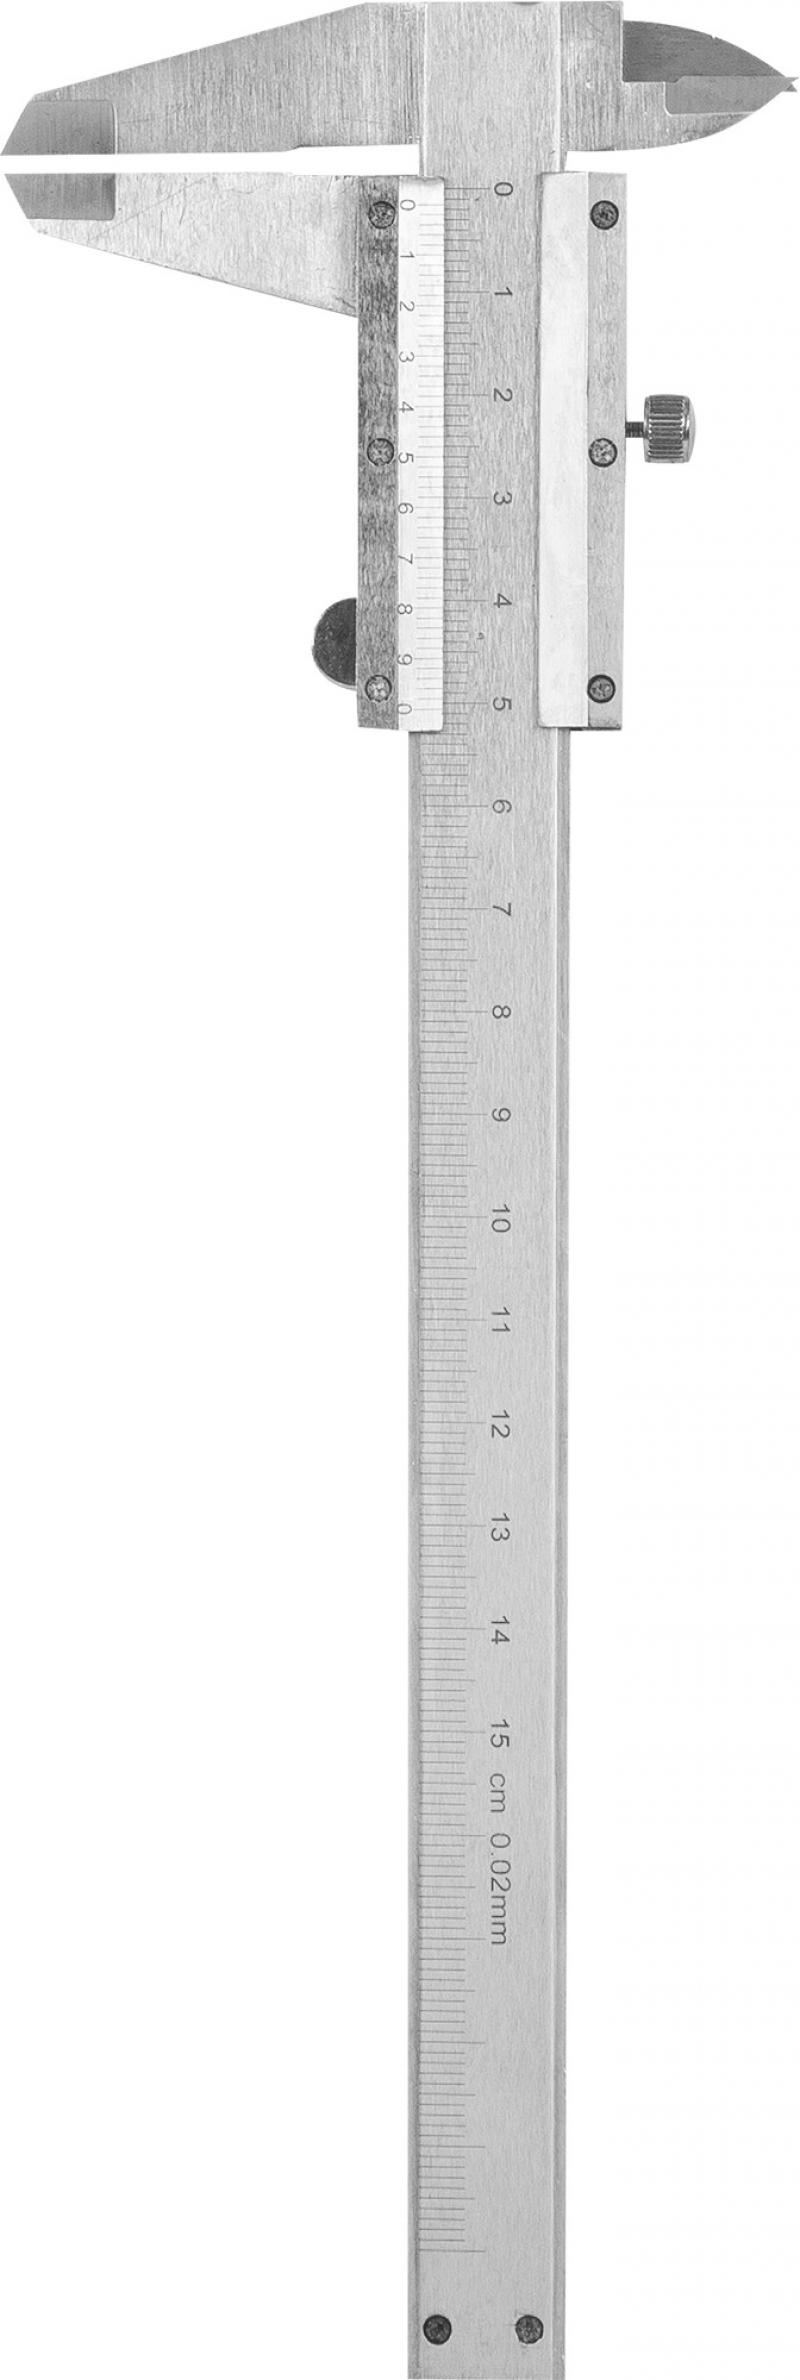 Тереңдік өлшегіші бар штангенциркуль Matrix 150 мм, арт. 316315